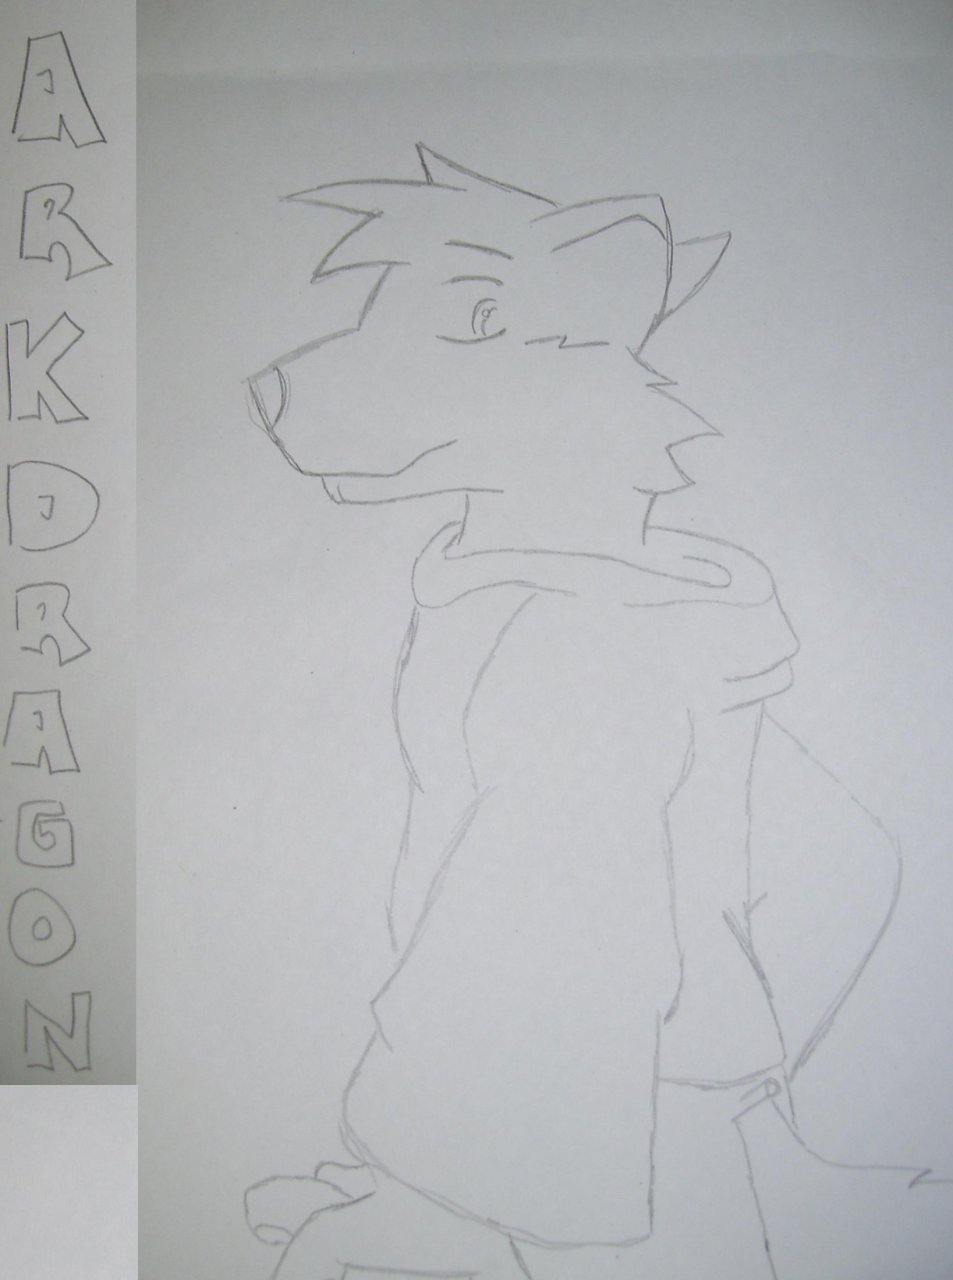 ArkDragons